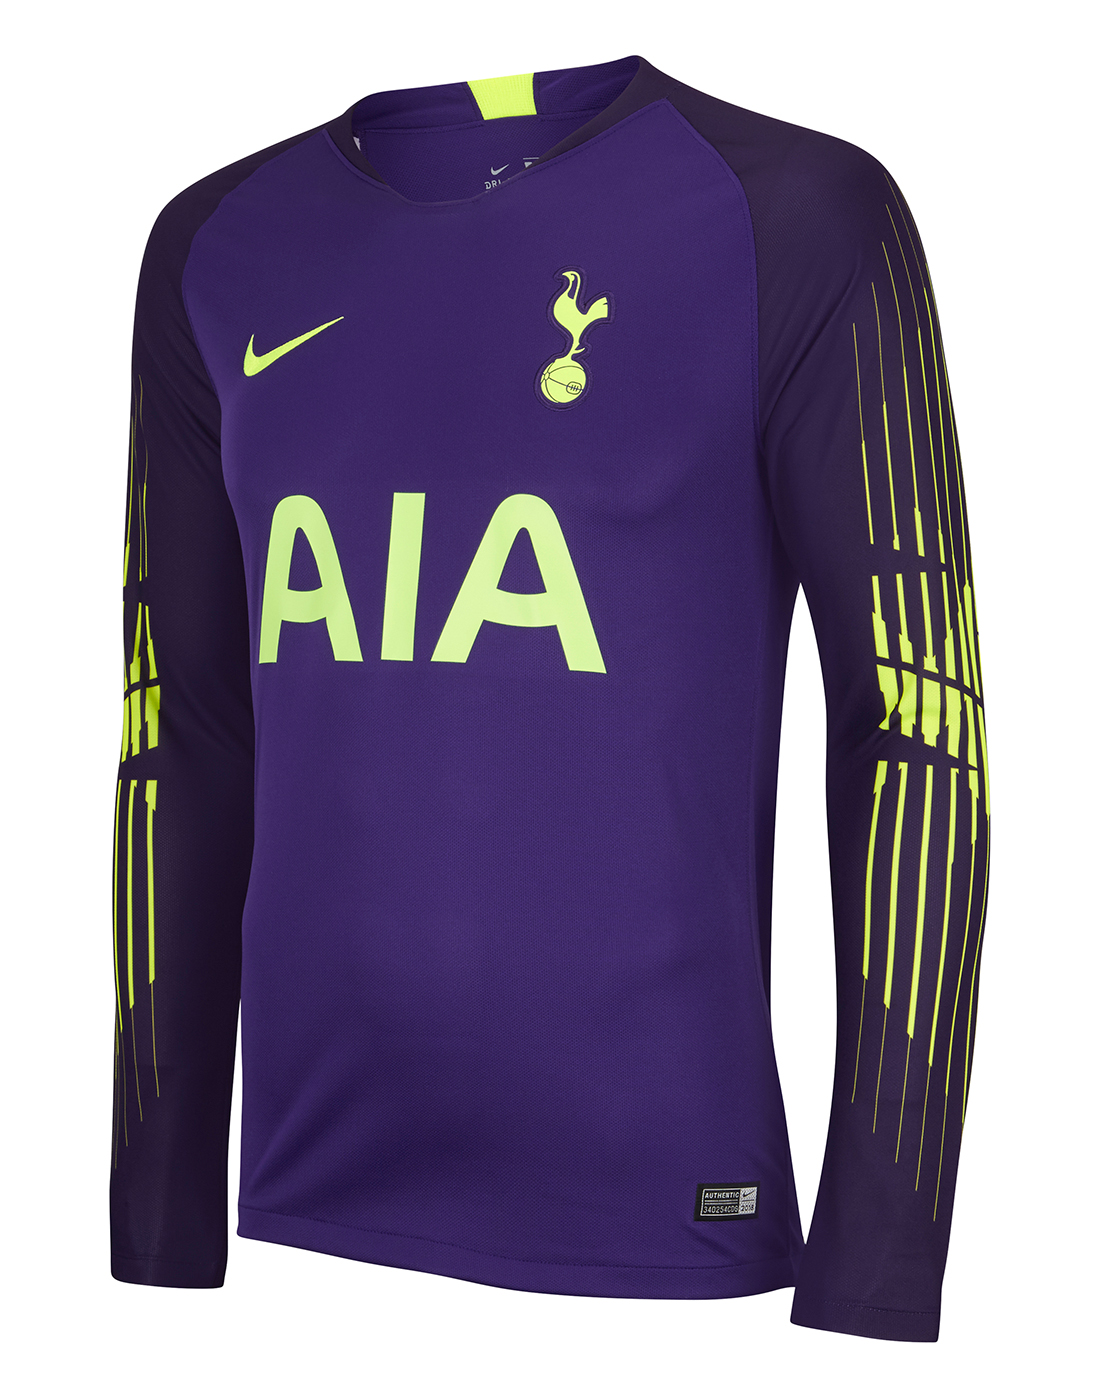 spurs goalkeeper shirt